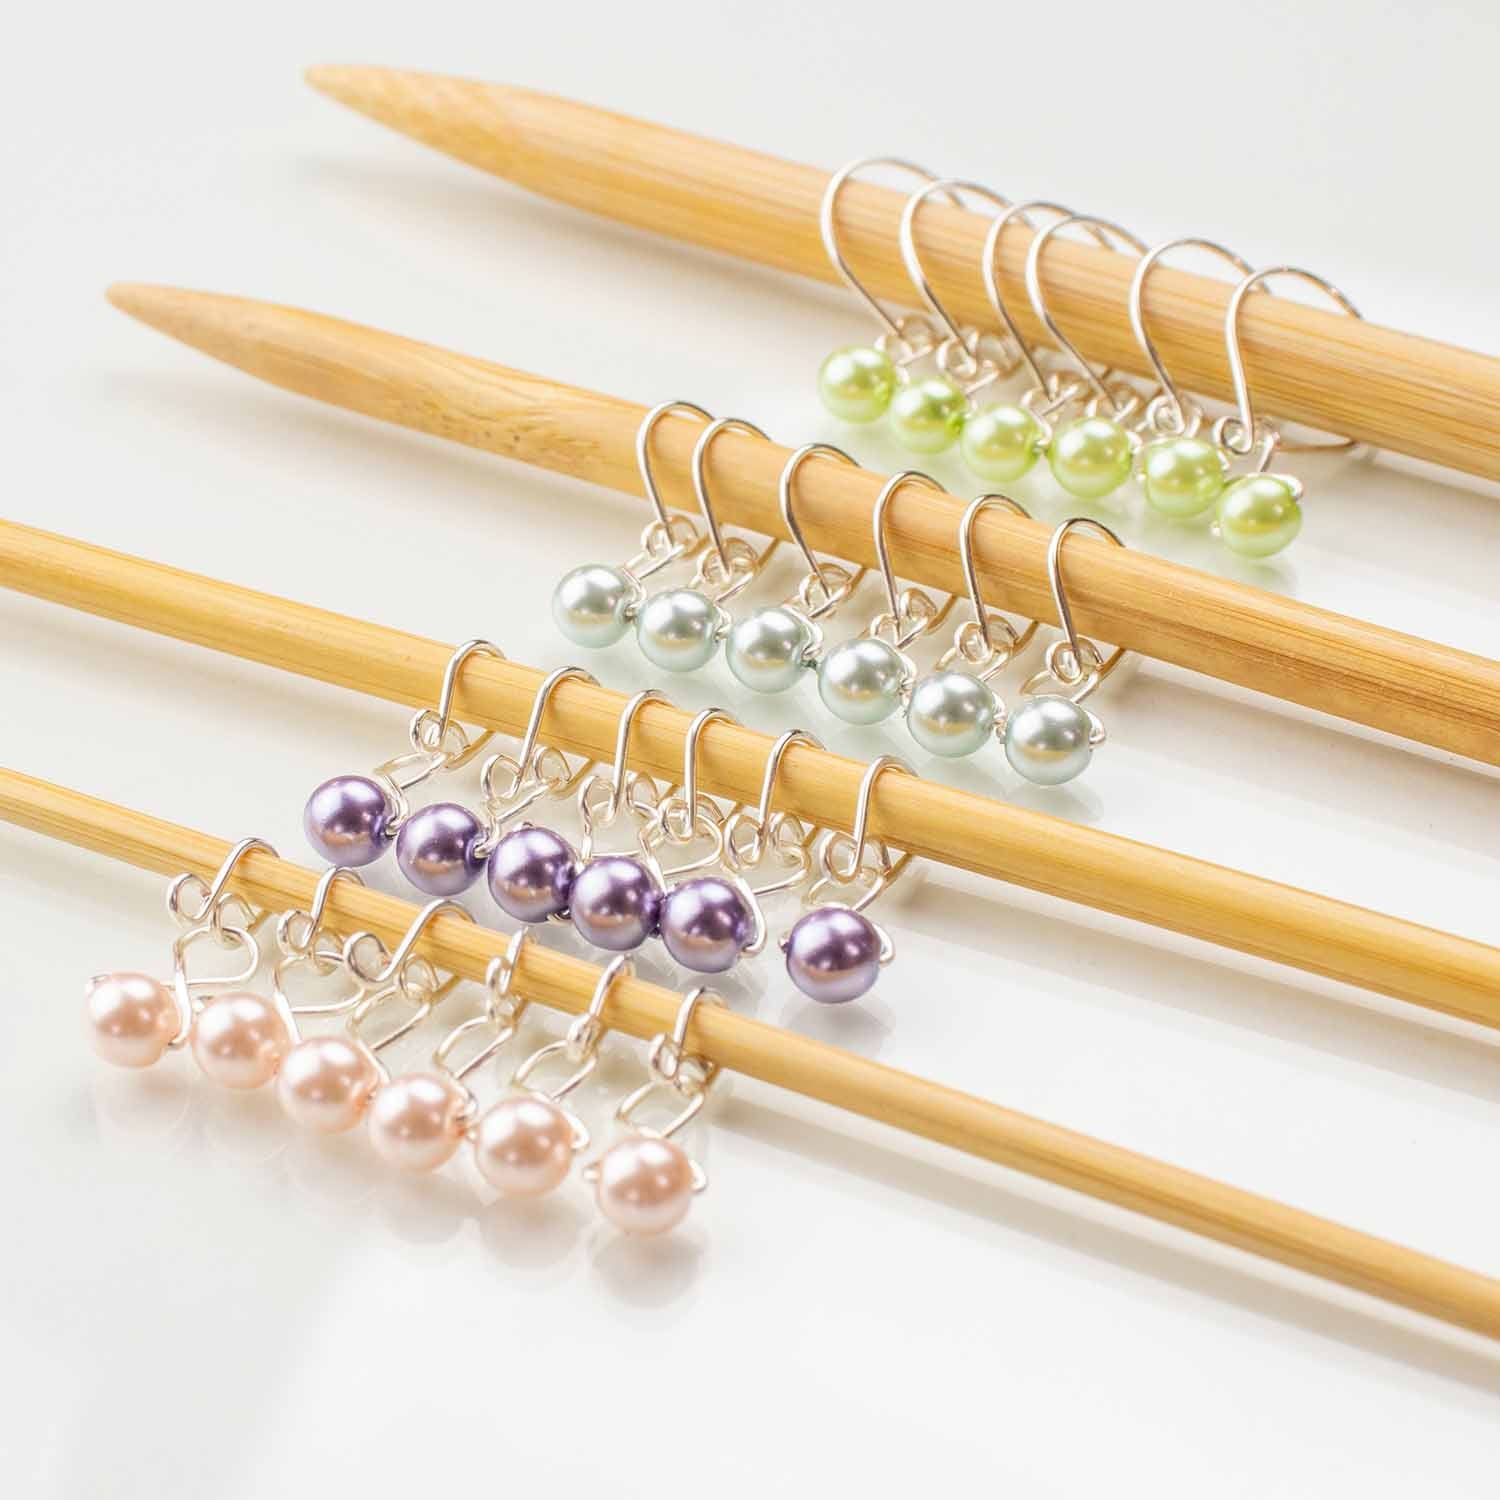 Stitch Marker Starter Set - Pastel Pearls